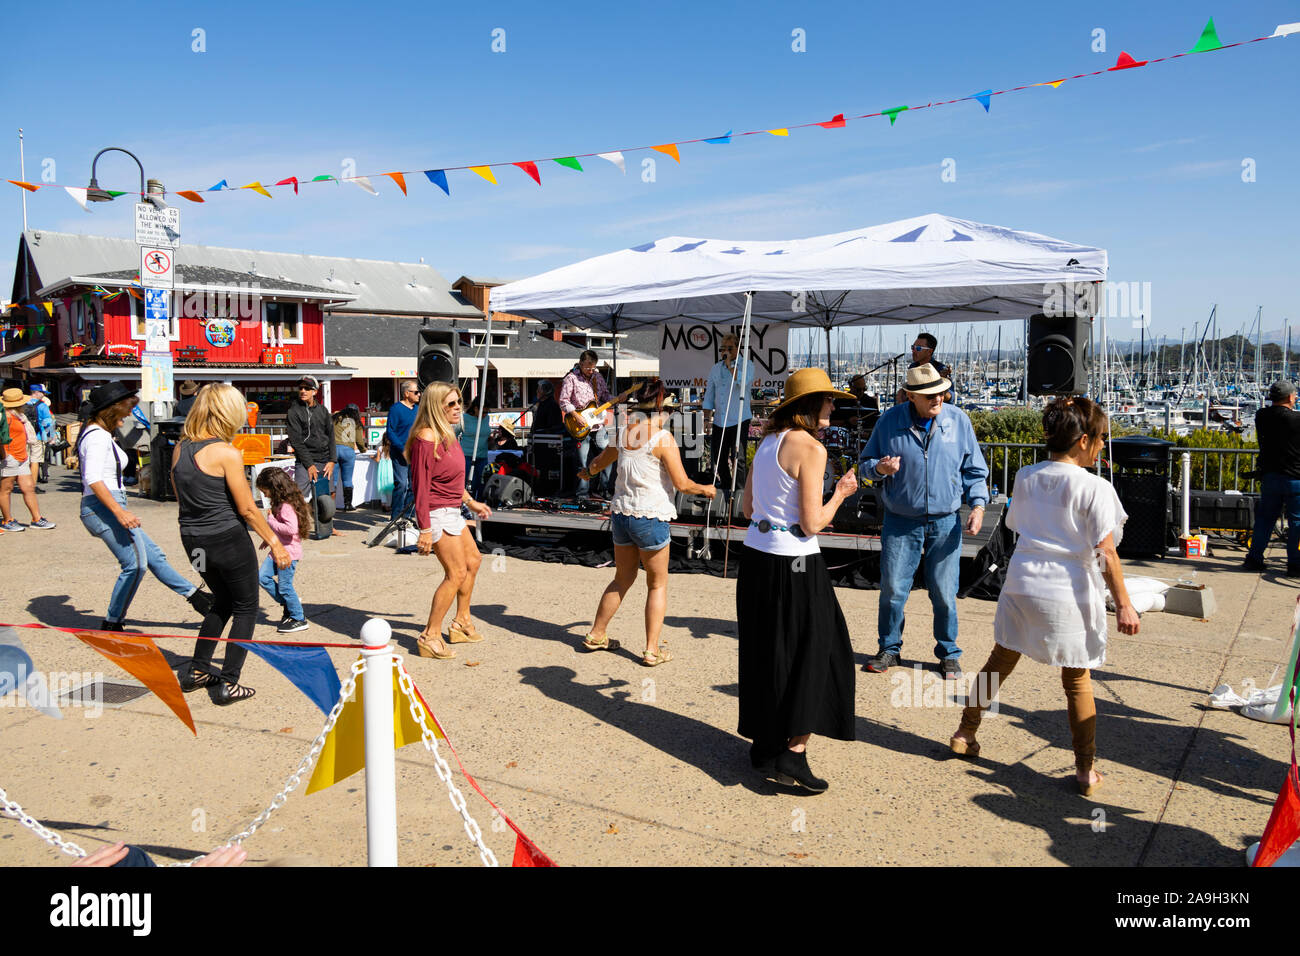 Piscine en plein air à danser à un Live Band, Wharf de Monterey, Californie, États-Unis Banque D'Images